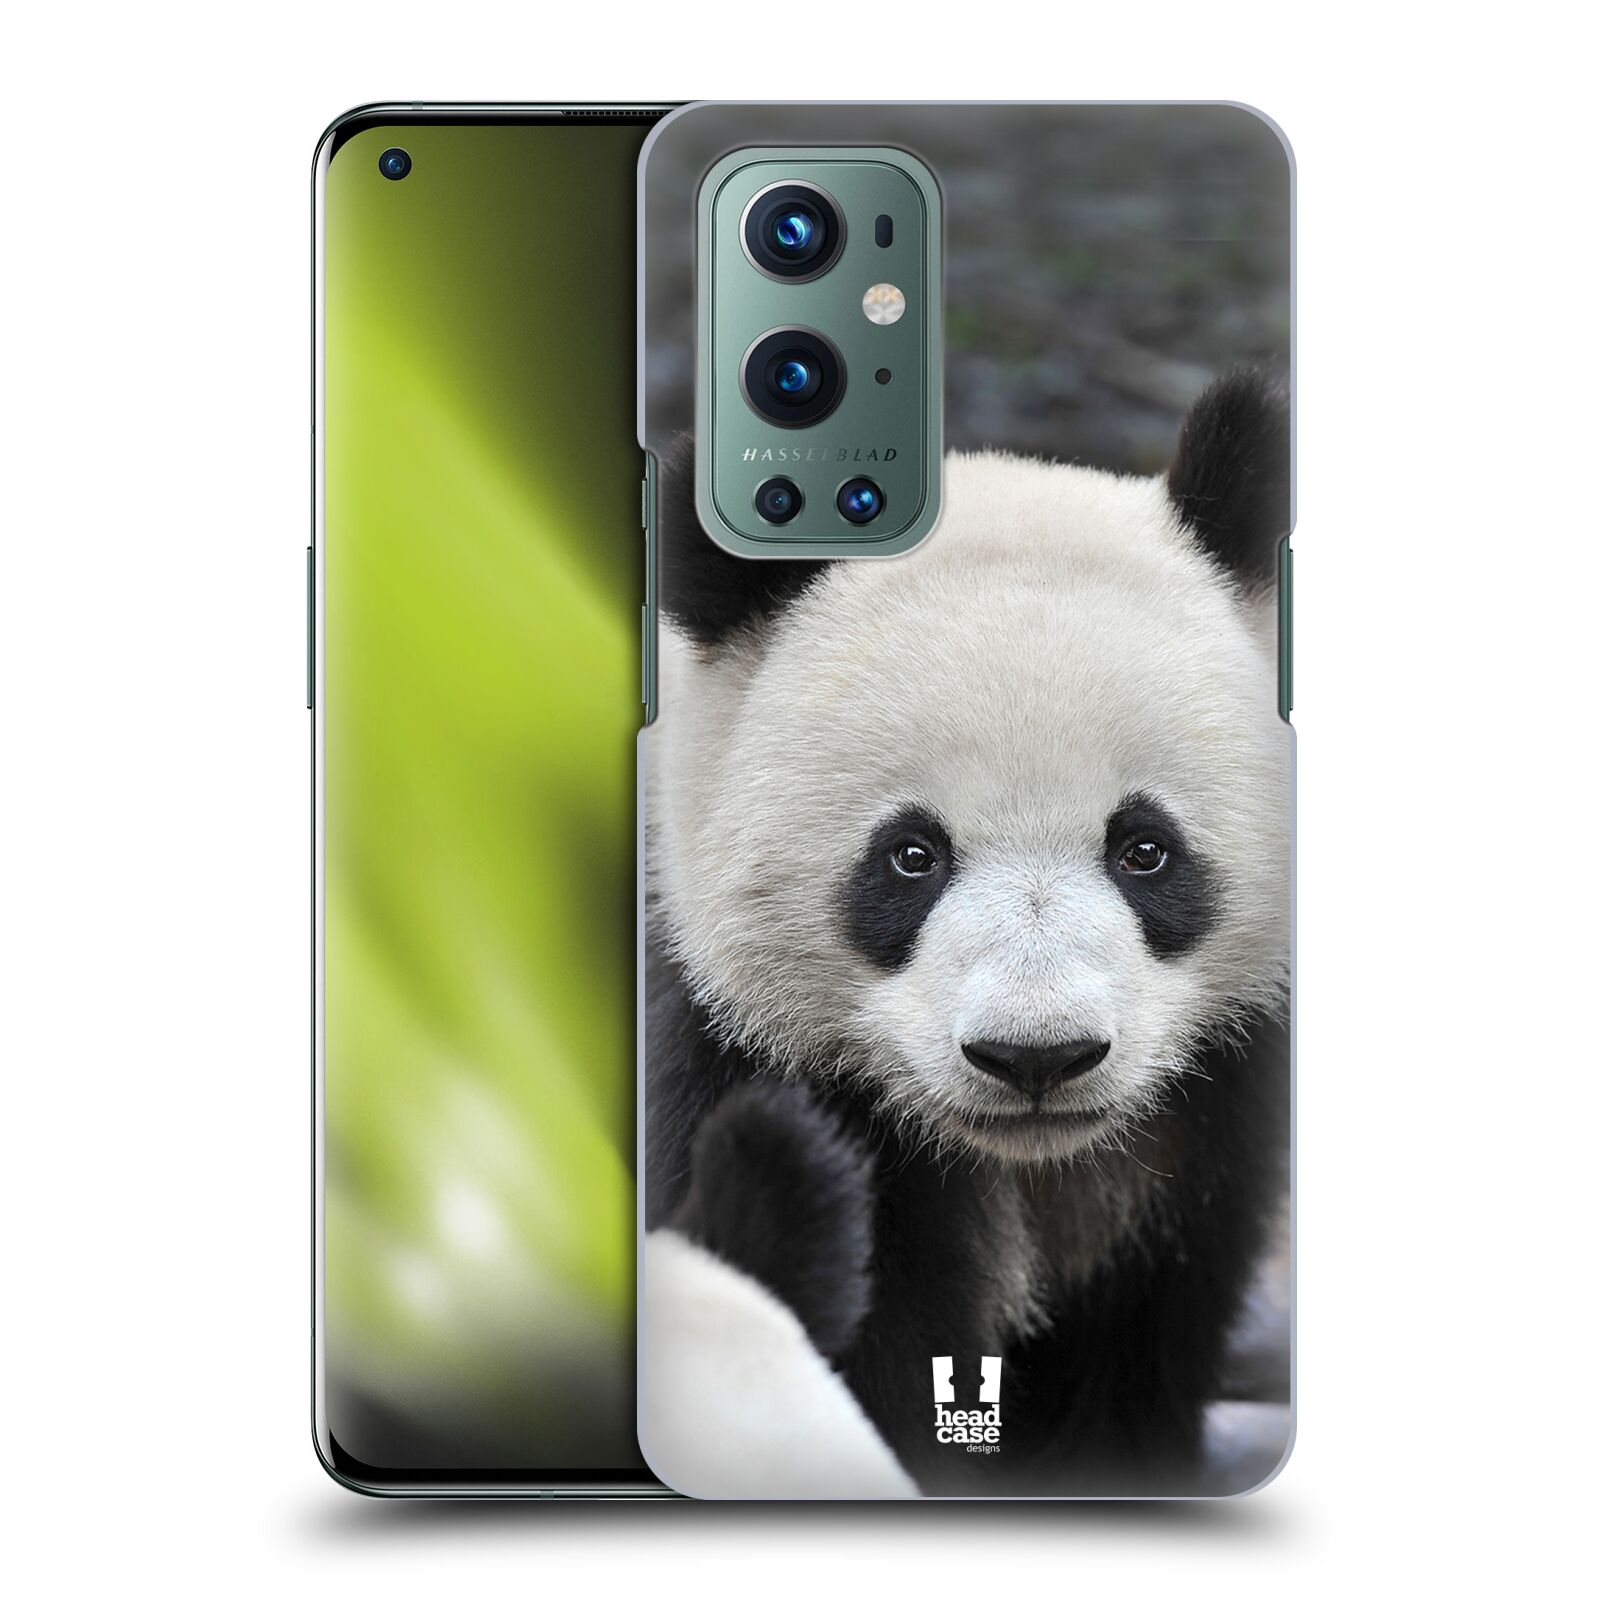 Zadní obal pro mobil OnePlus 9 - HEAD CASE - Svět zvířat medvěd panda